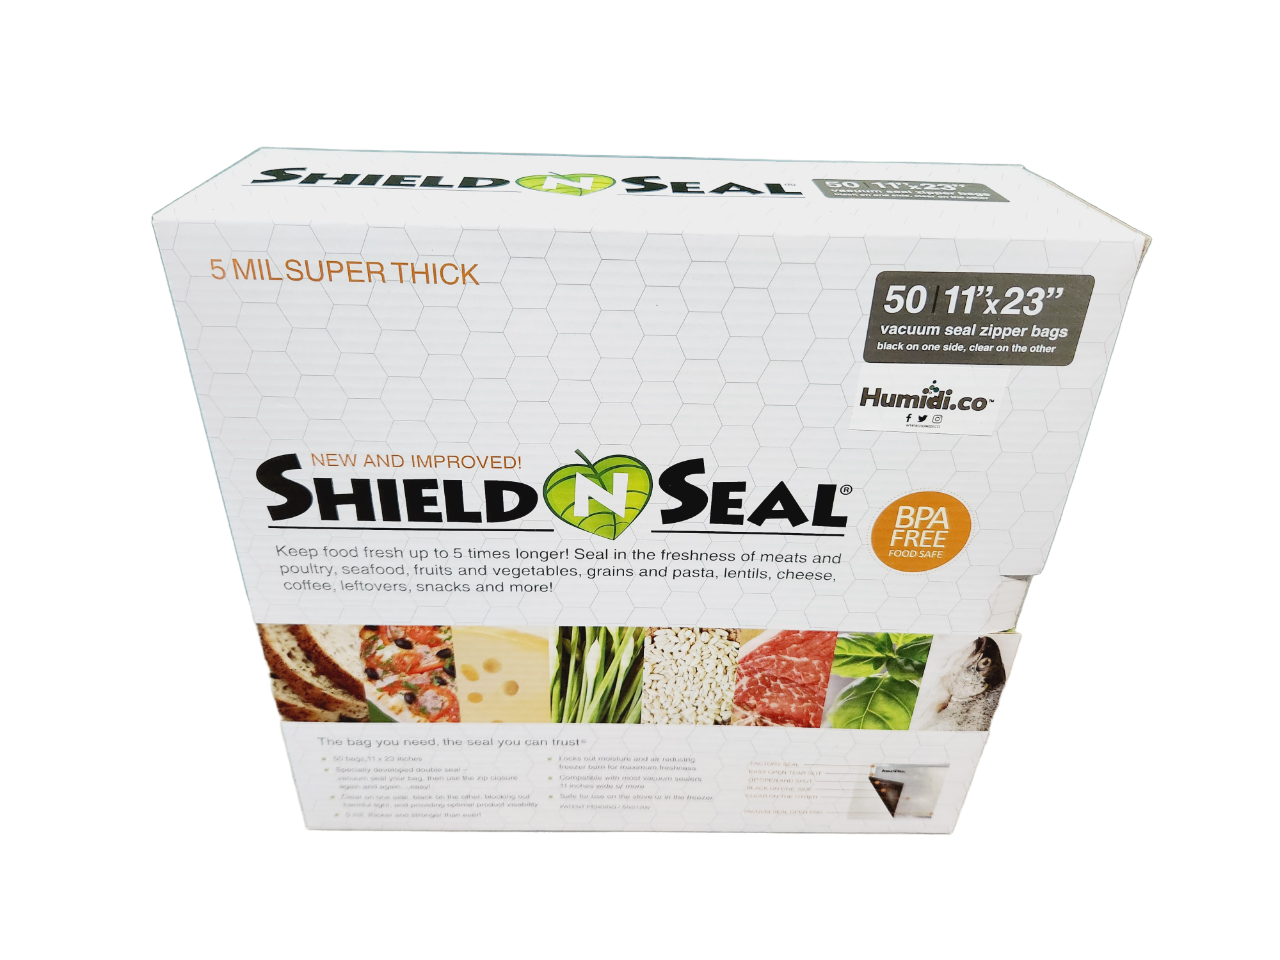 Shield N Seal® SNS 1200 11" x 23" 50ct Zipper Bags (Clear/Black)